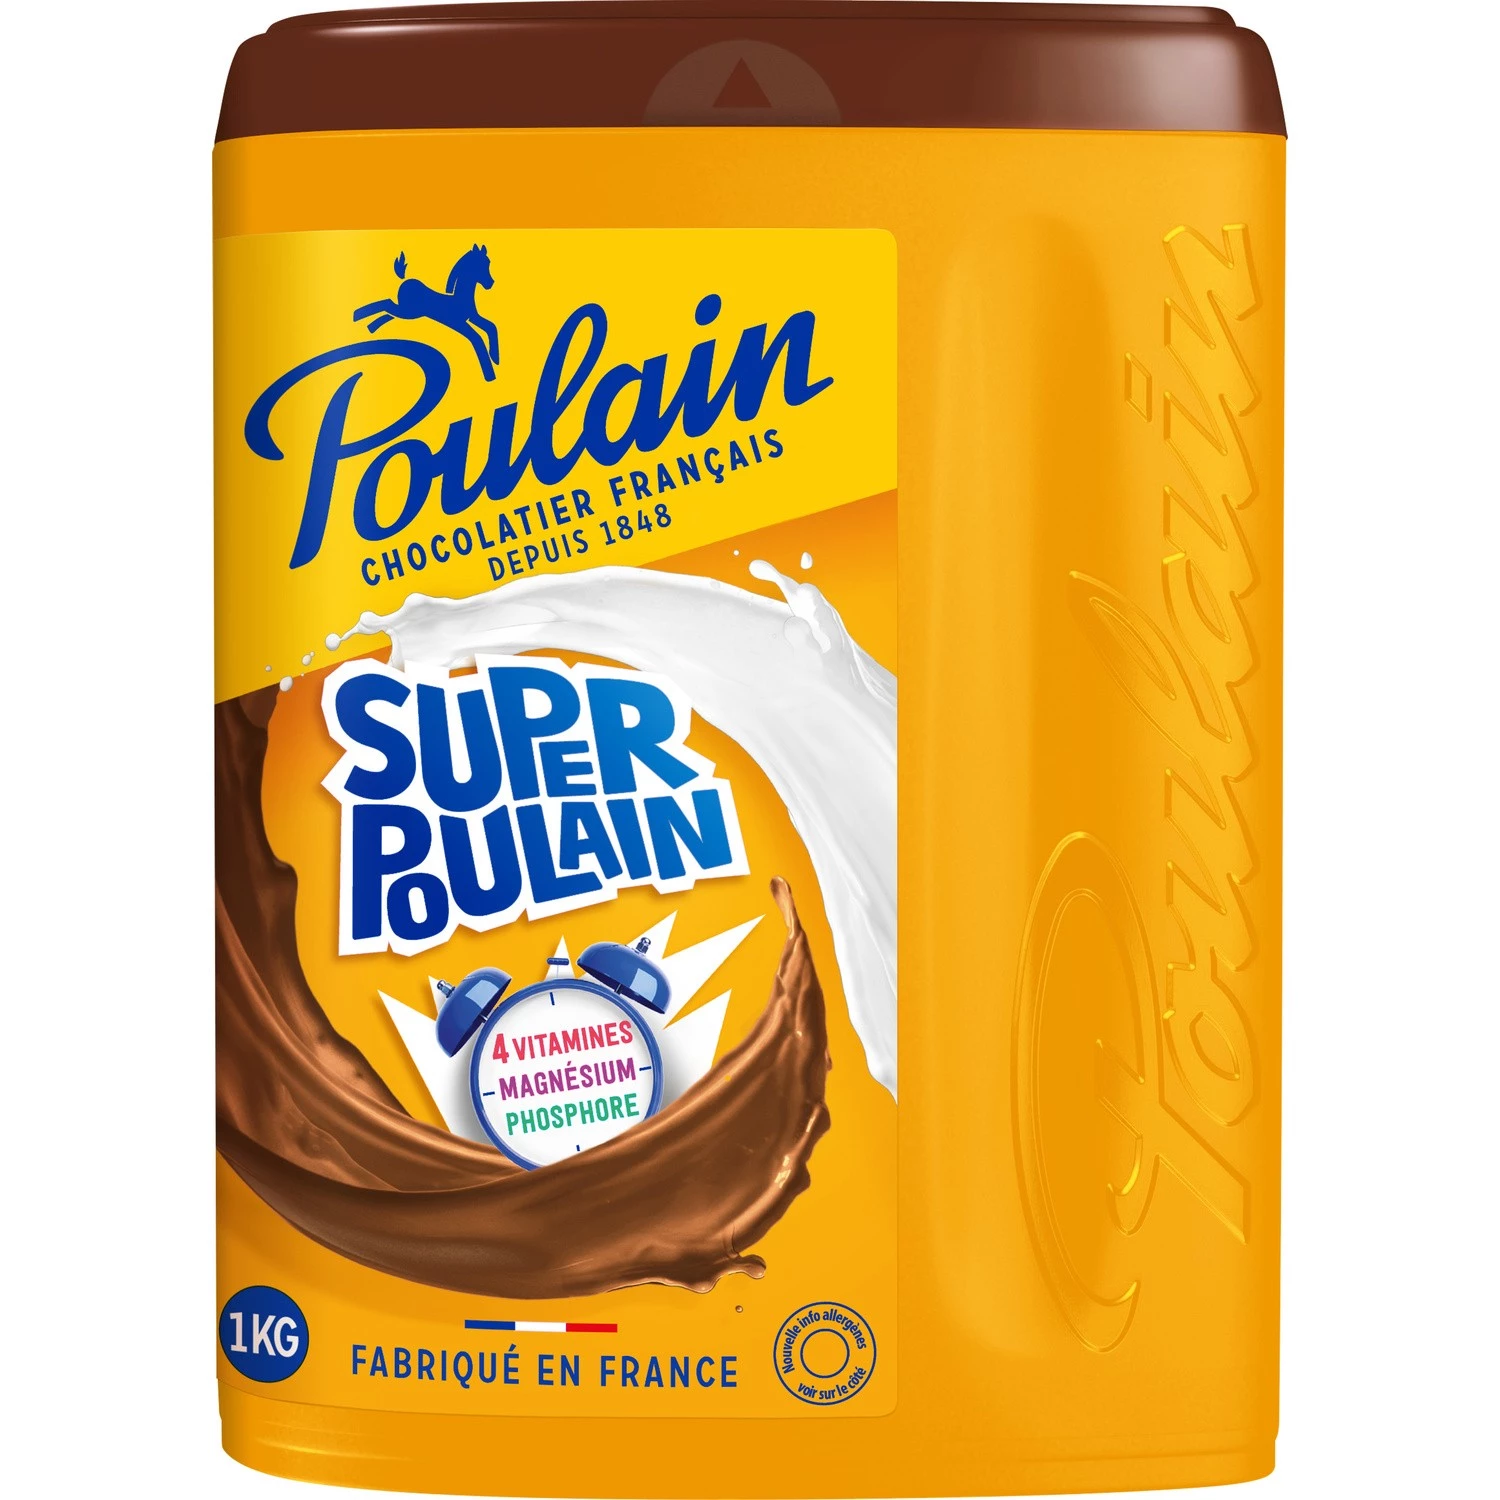 Super Poulain 1kg